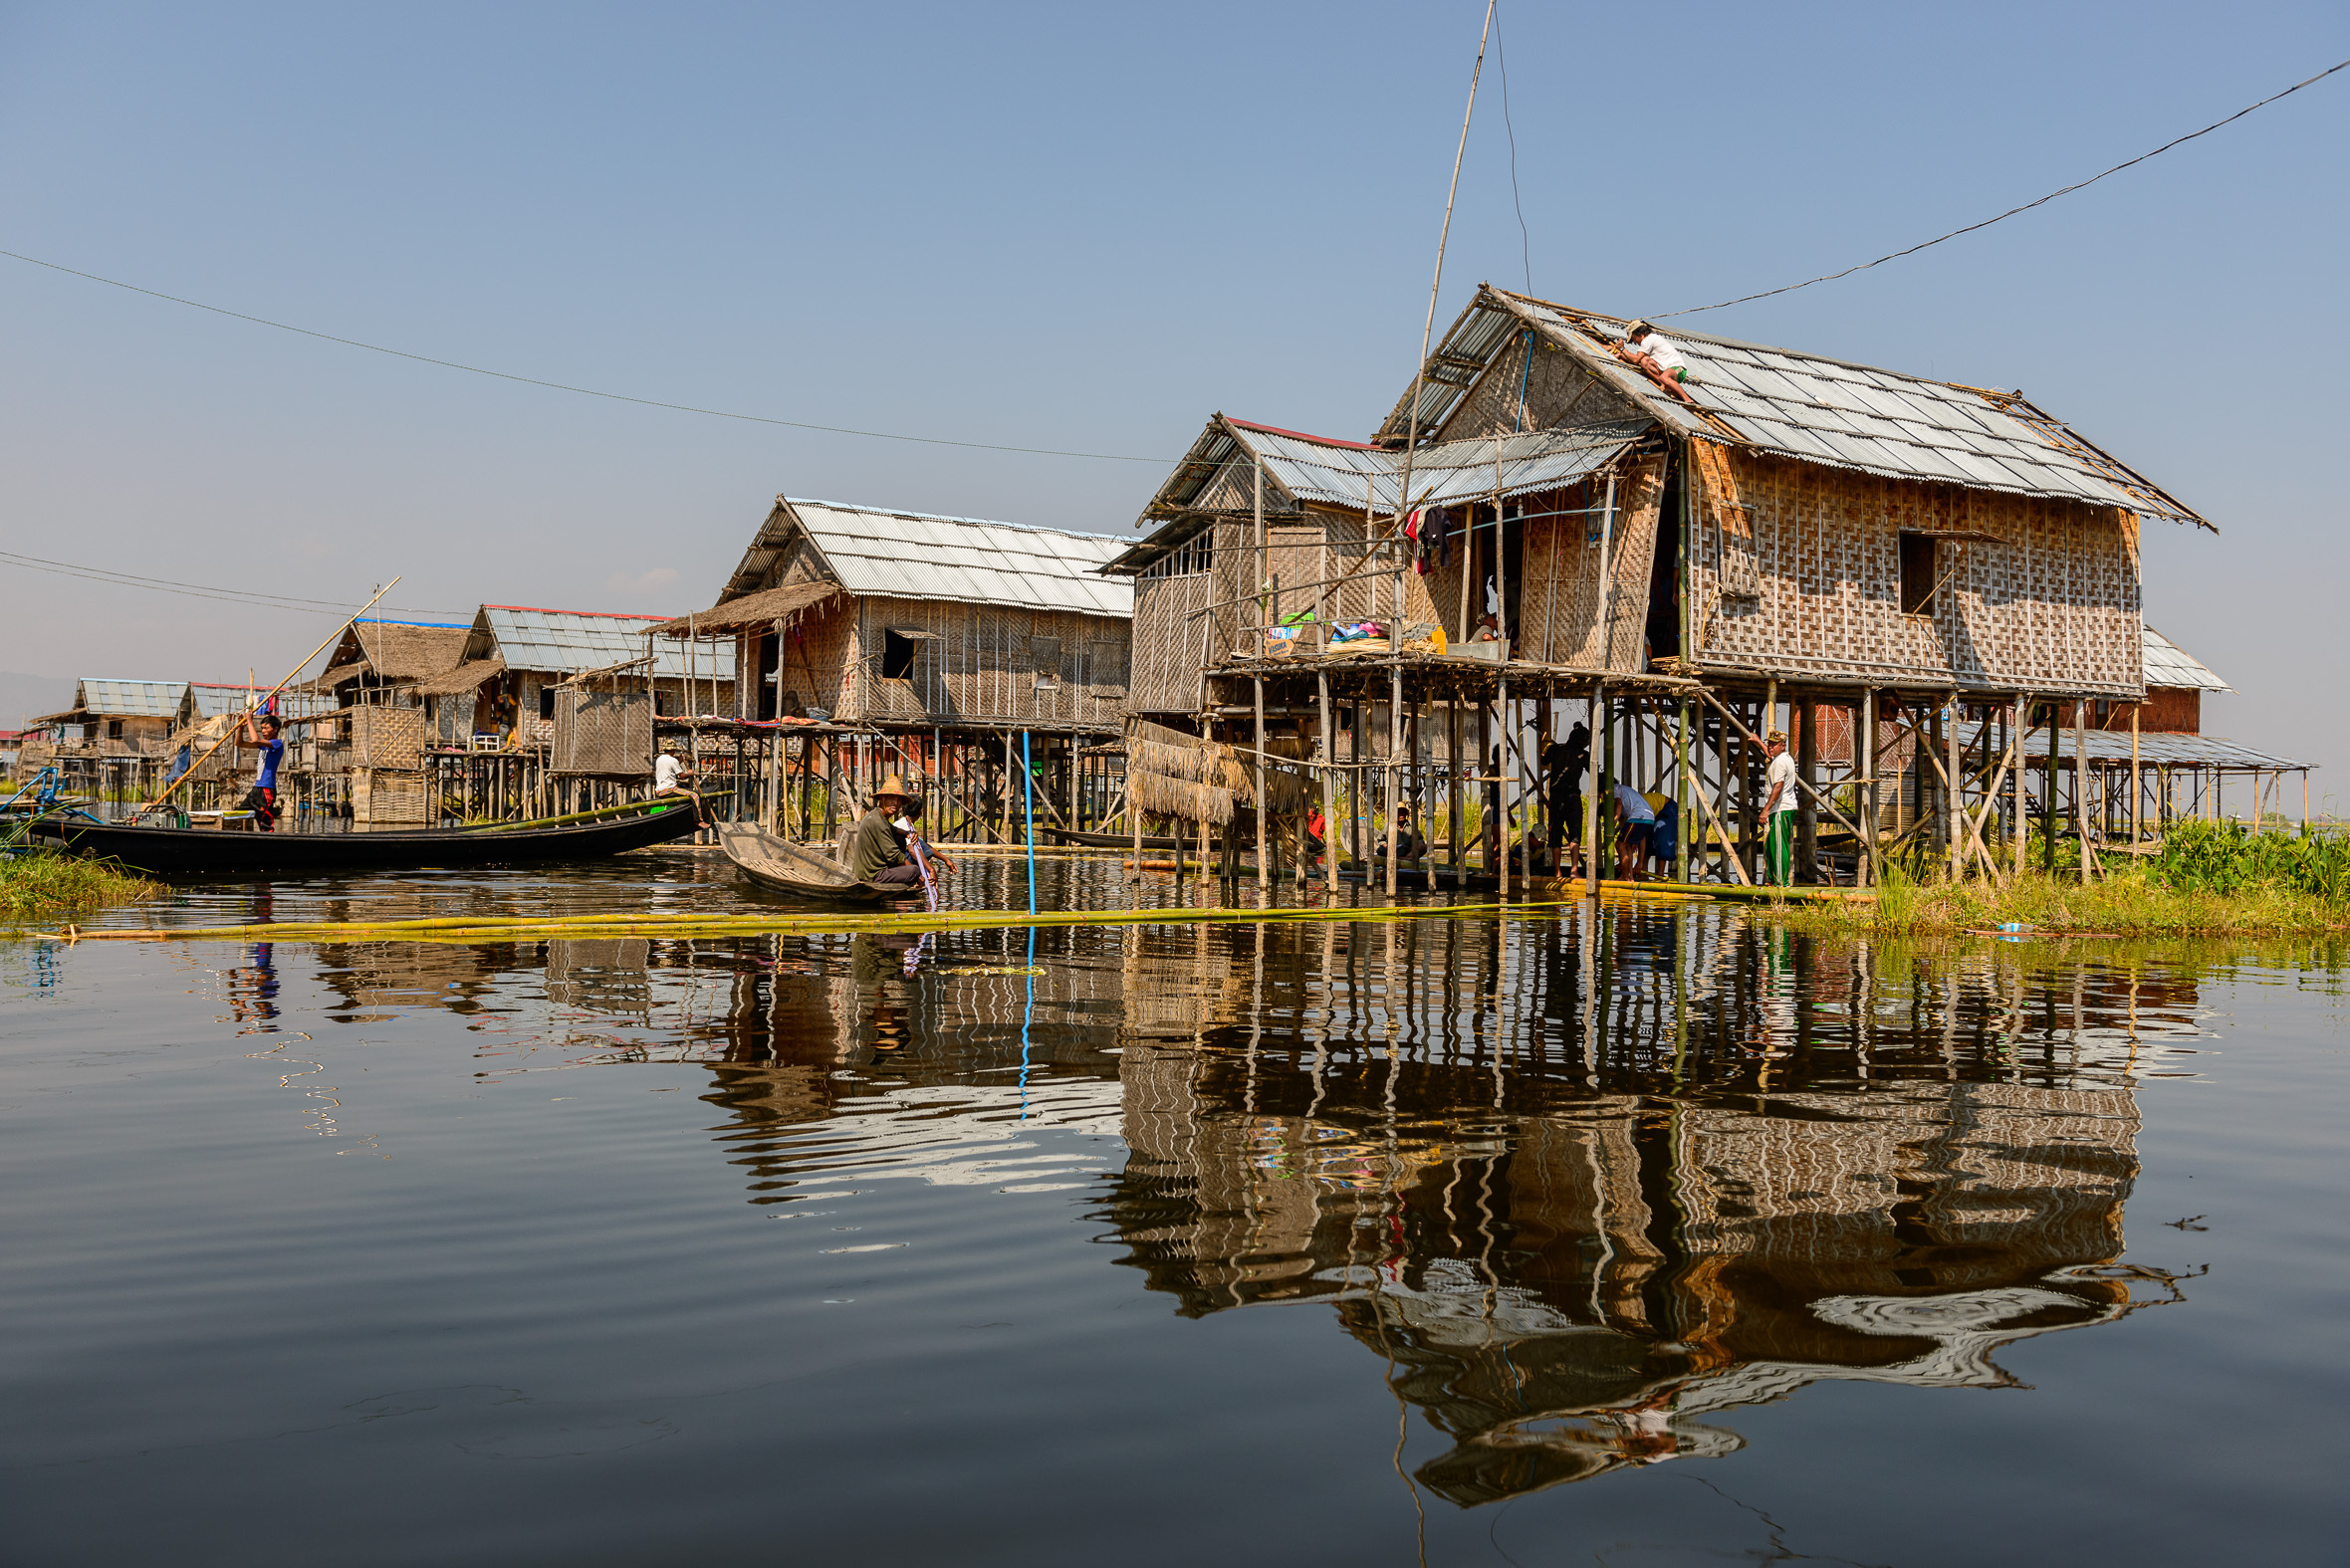 Village Life on Inle Lake